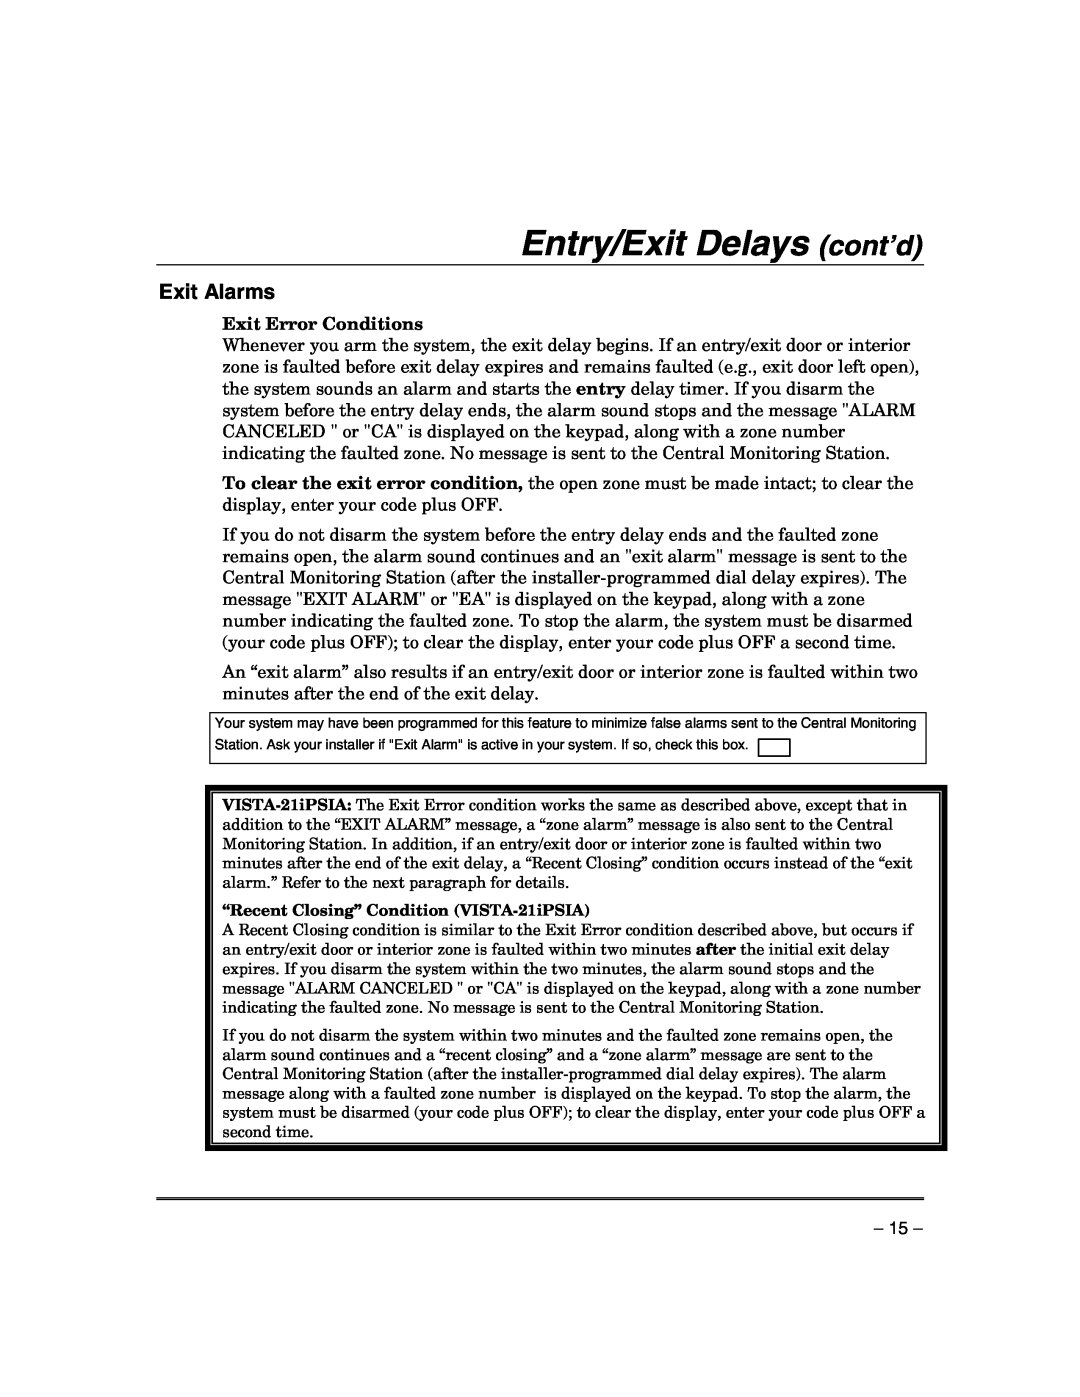 Honeywell VISTA-21IPSIA manual Entry/Exit Delays cont’d, Exit Alarms, Exit Error Conditions 